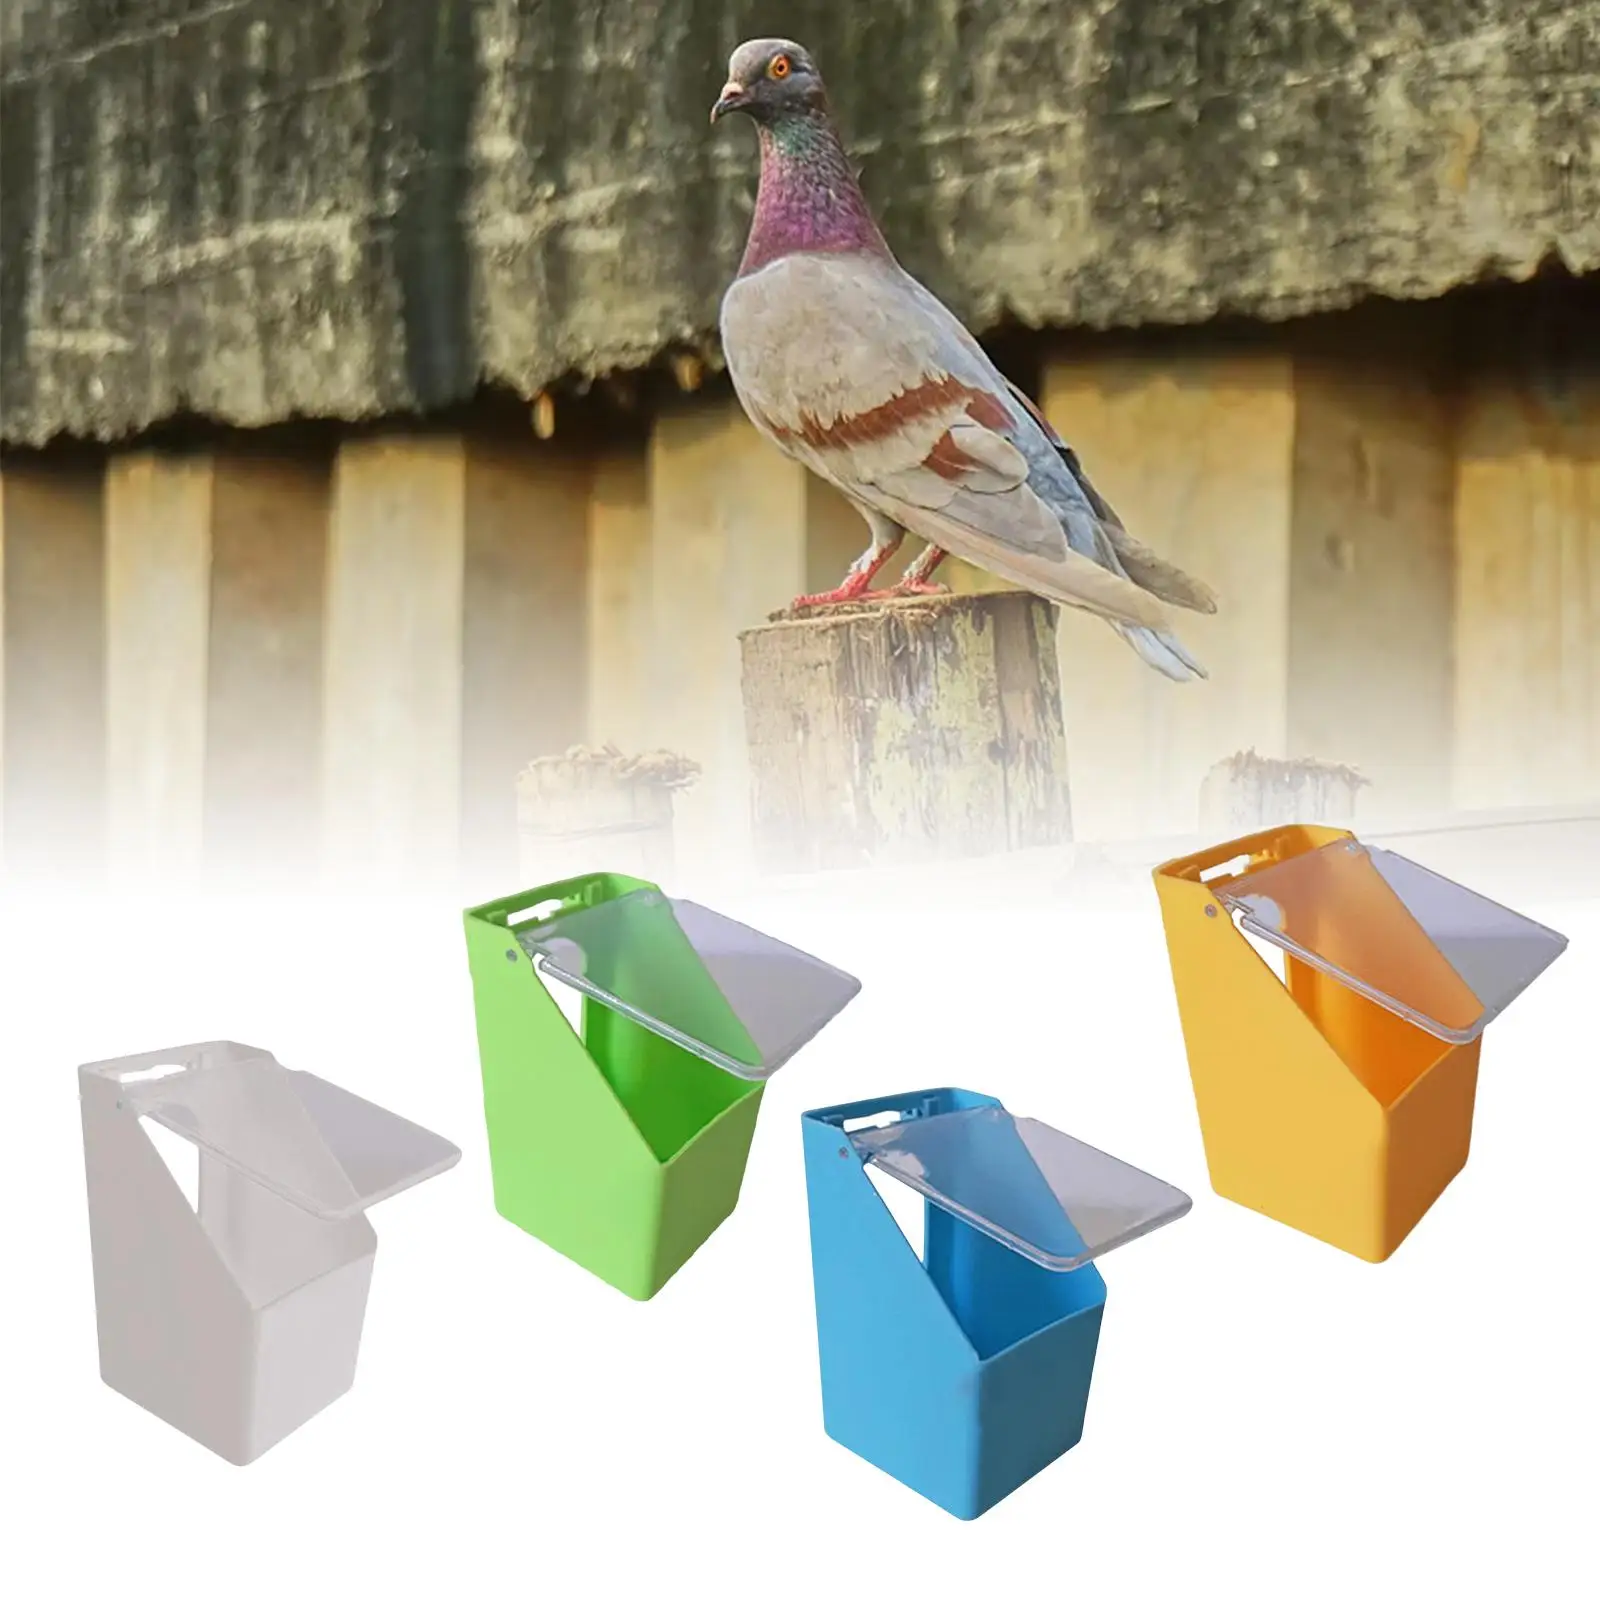 Bird Food Feeder Hanging Box Poultry Feeder Convenient Bird Feeder Trough for Pigeon